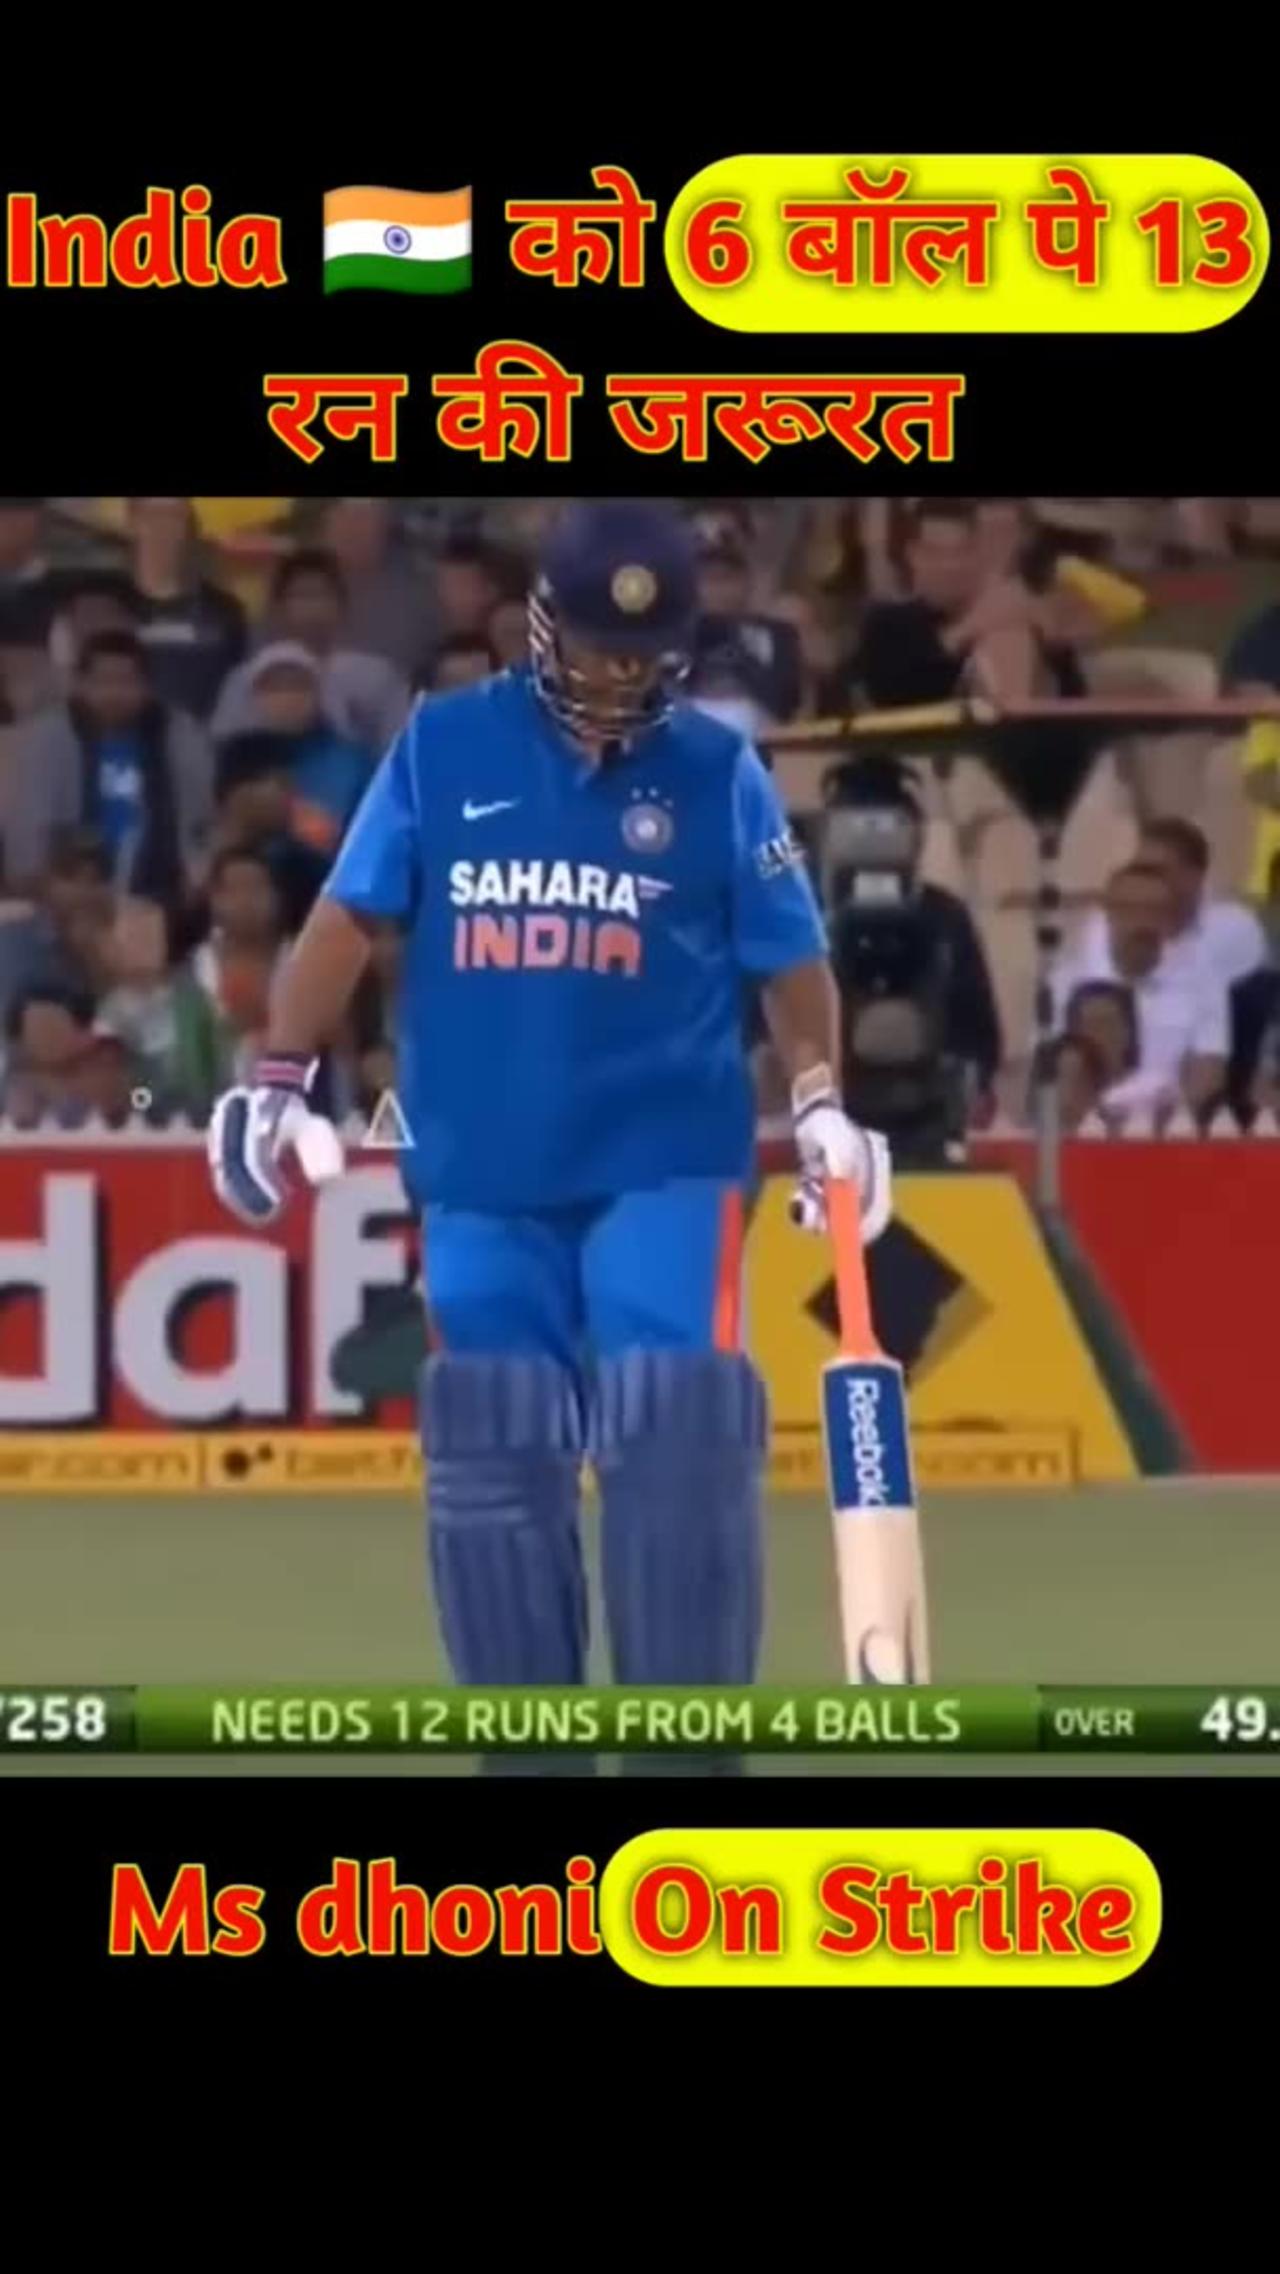 MS Dhoni wins it for India vs Australia